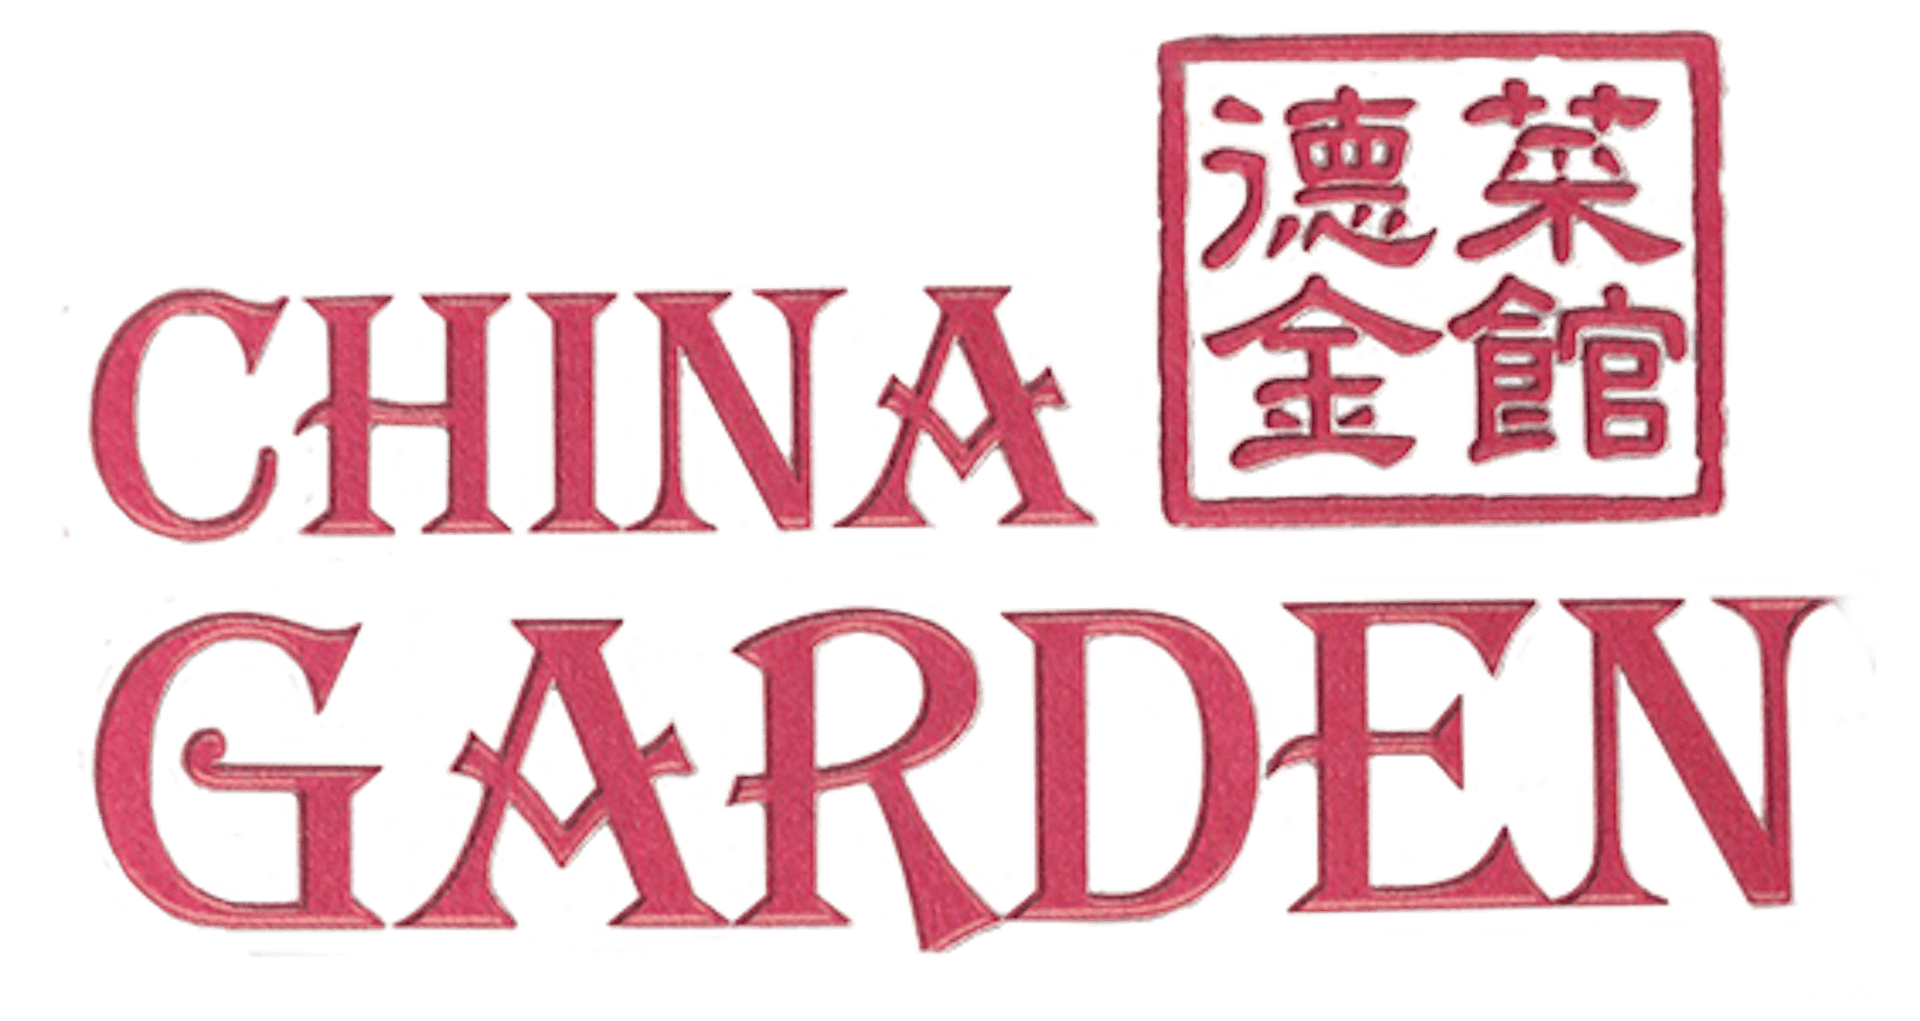 China Garden Overland Park Ks 66221 Menu Order Online